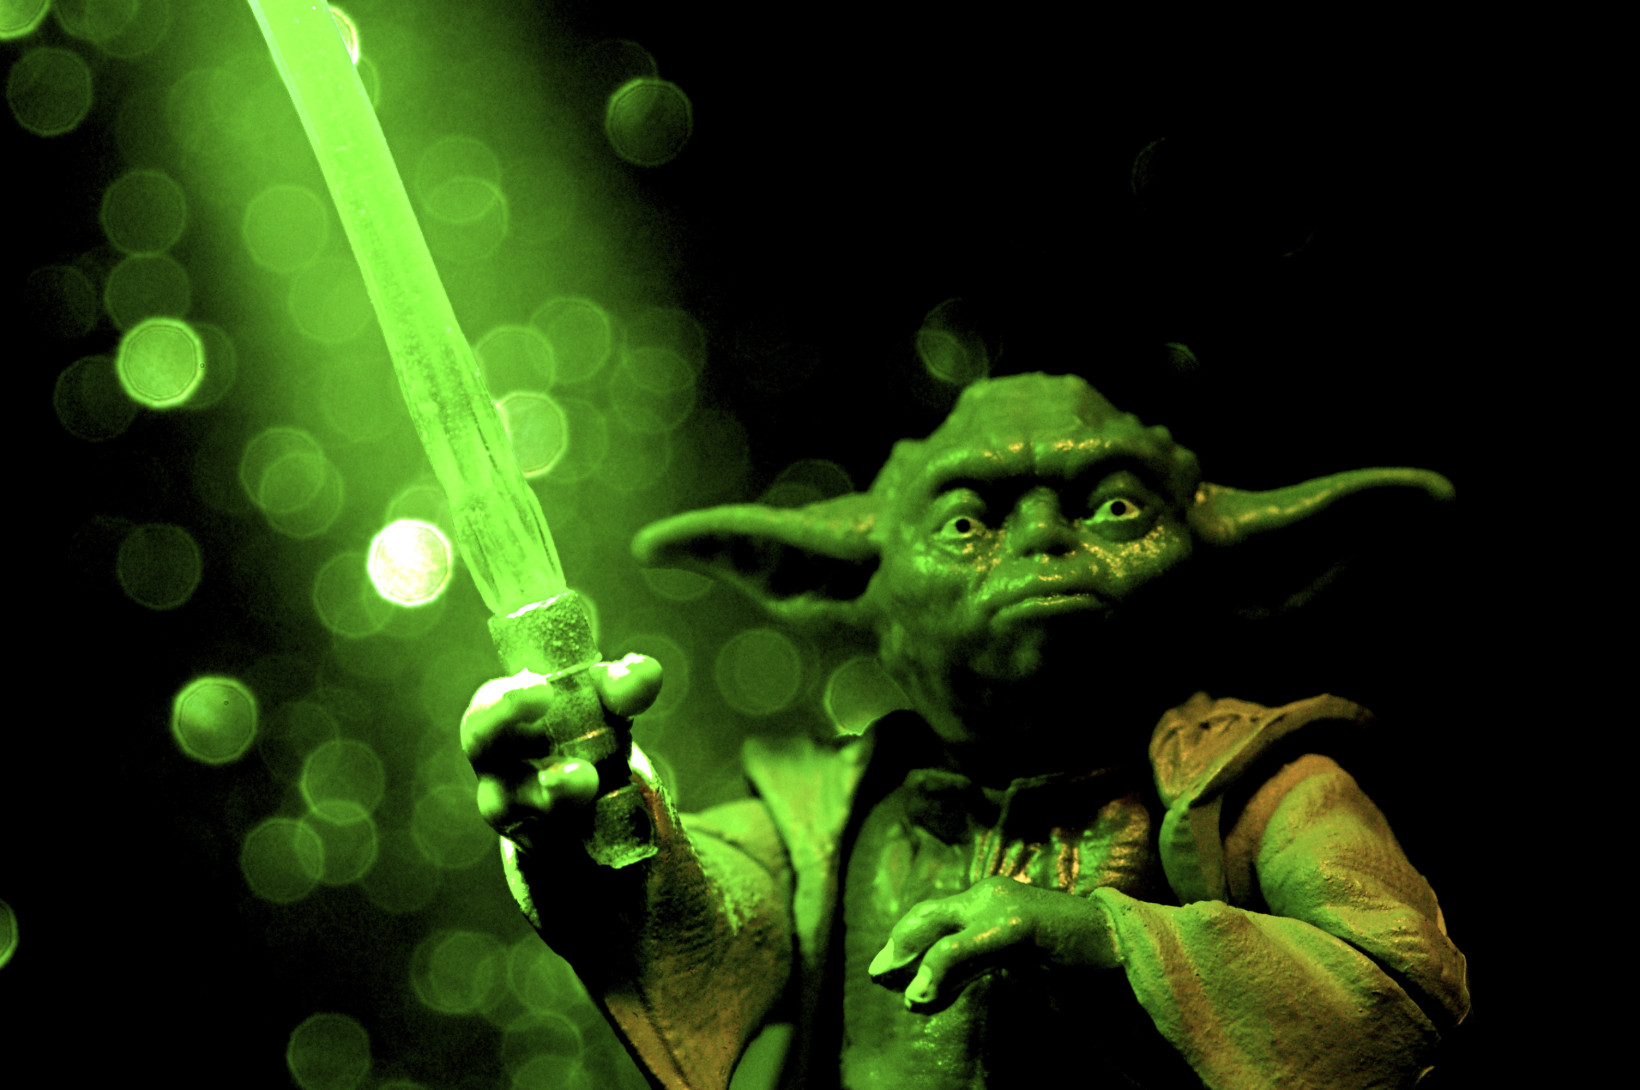 Yoda's gorgeous green lightsaber